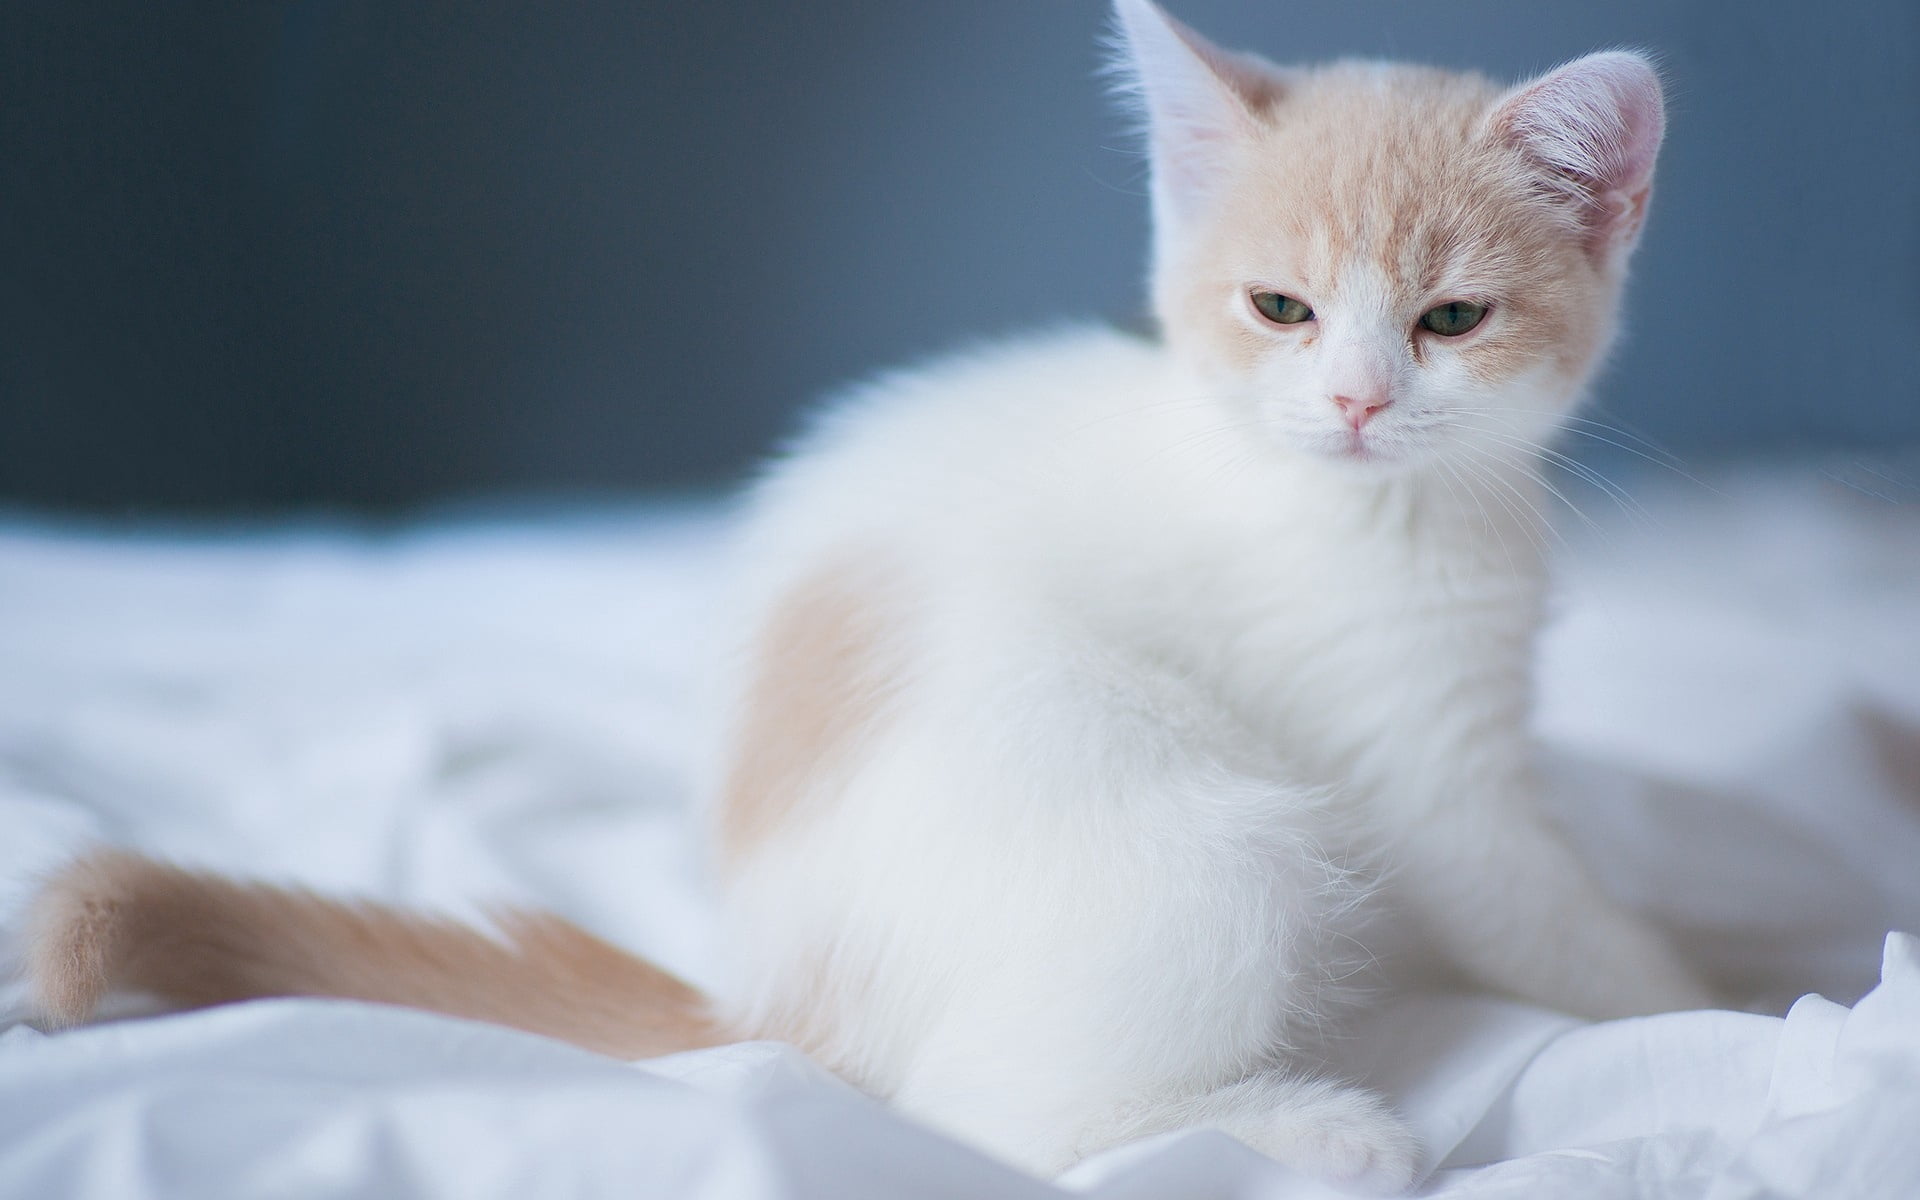 white and orange tabby kitten, sheet, squint, light, animal themes